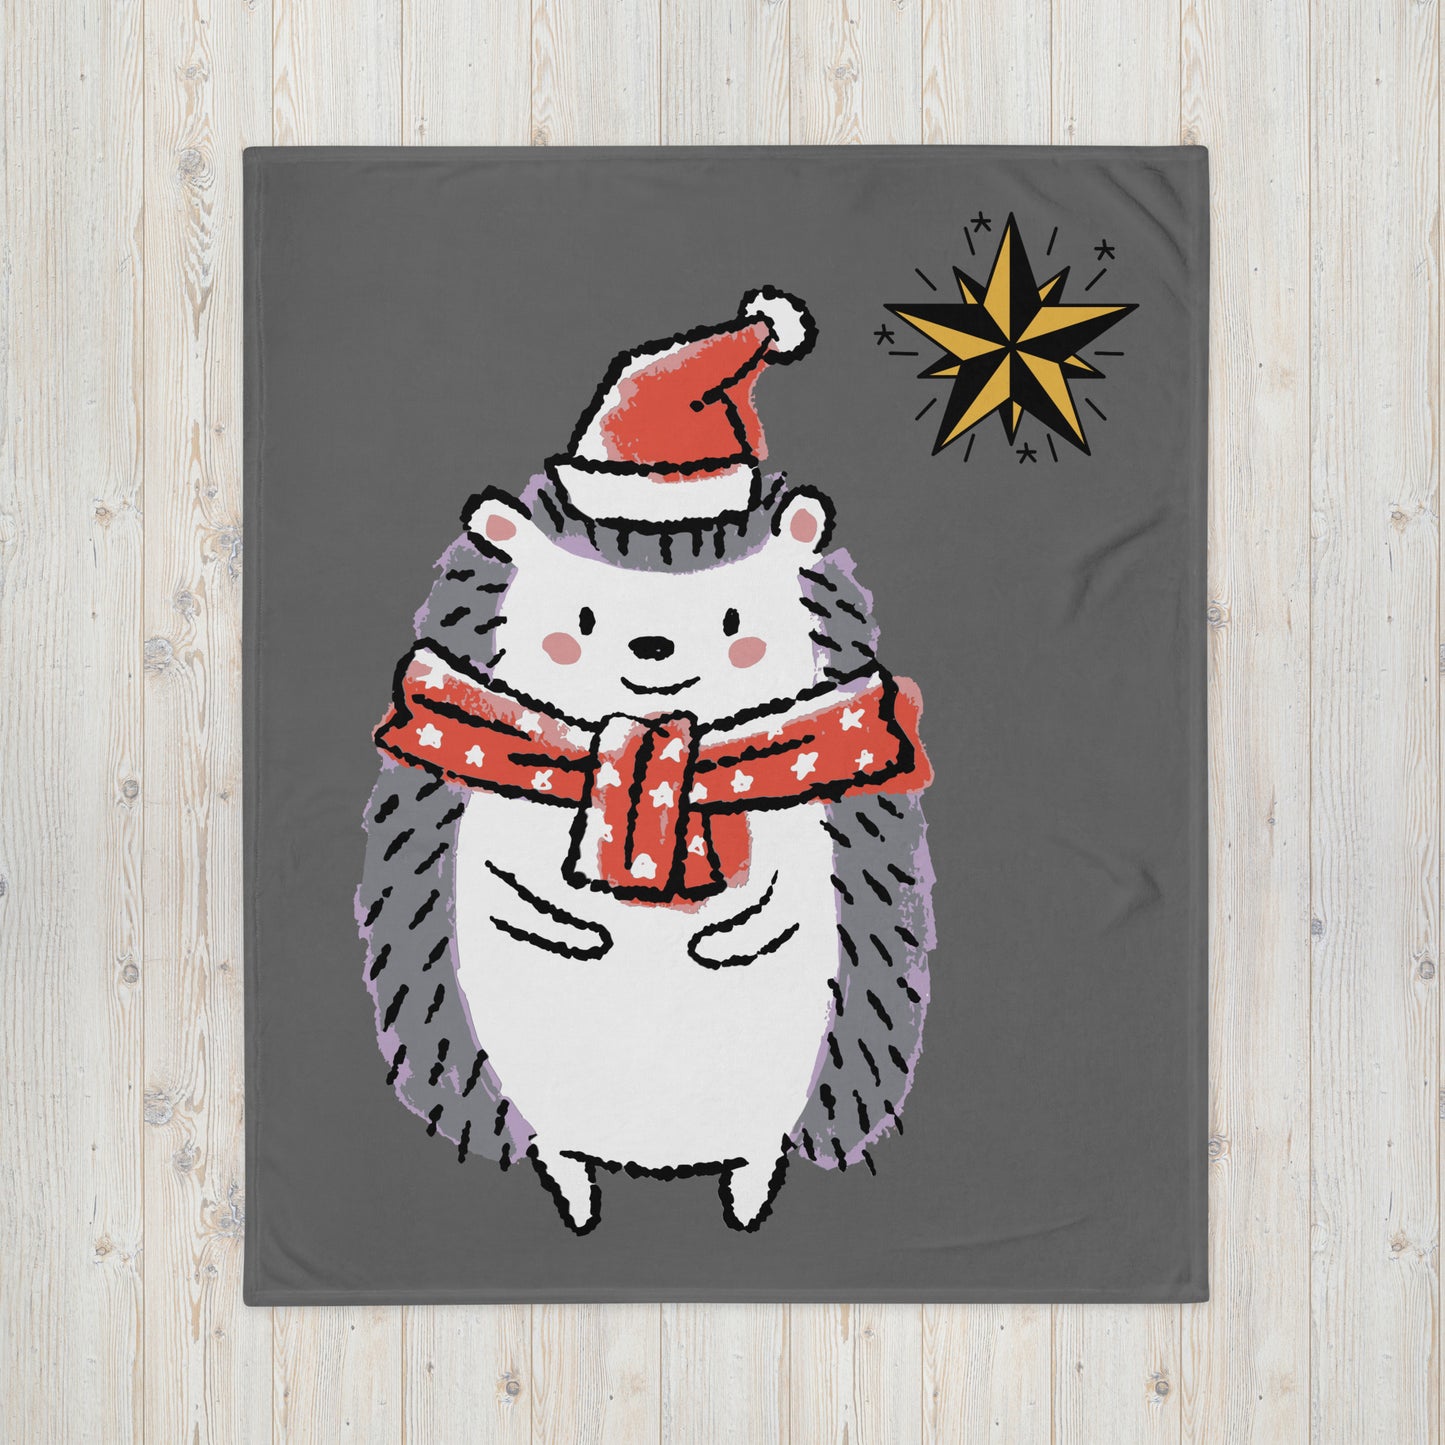 "Christmas hedgehog" blanket